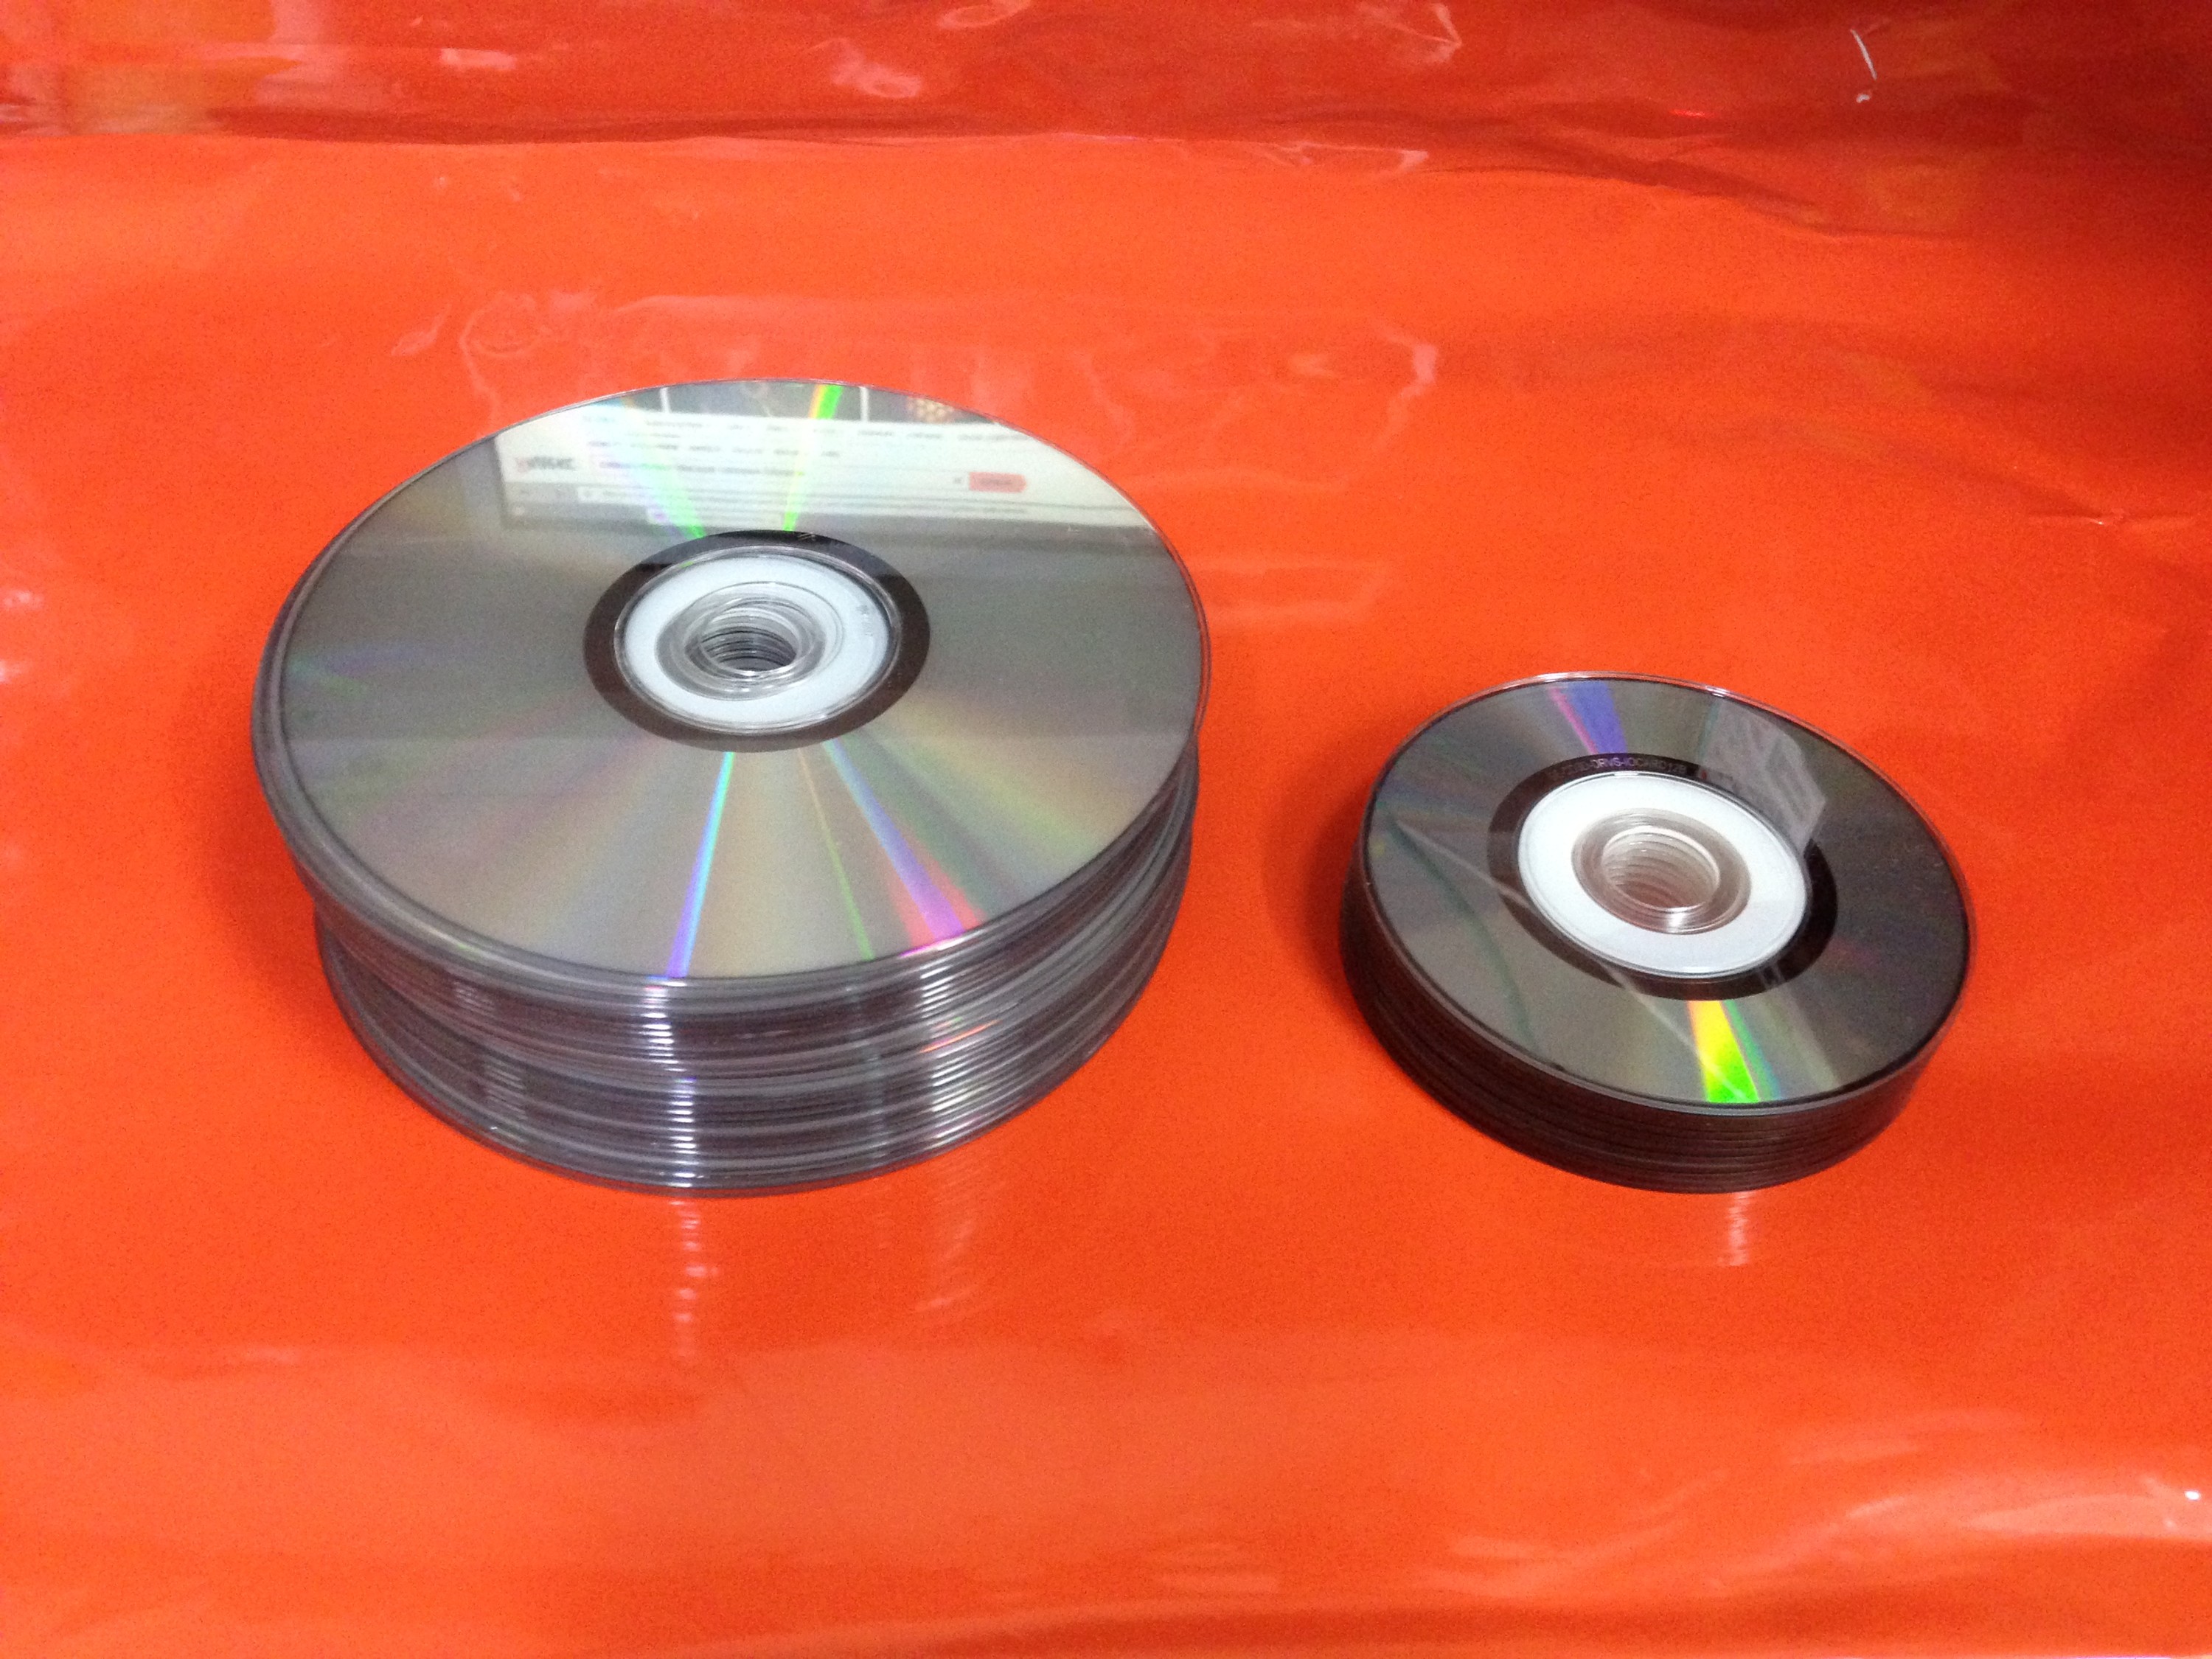 Настольная USB лампа из бумаги, CD-дисков и другой мелочи. на портале Сделай сам